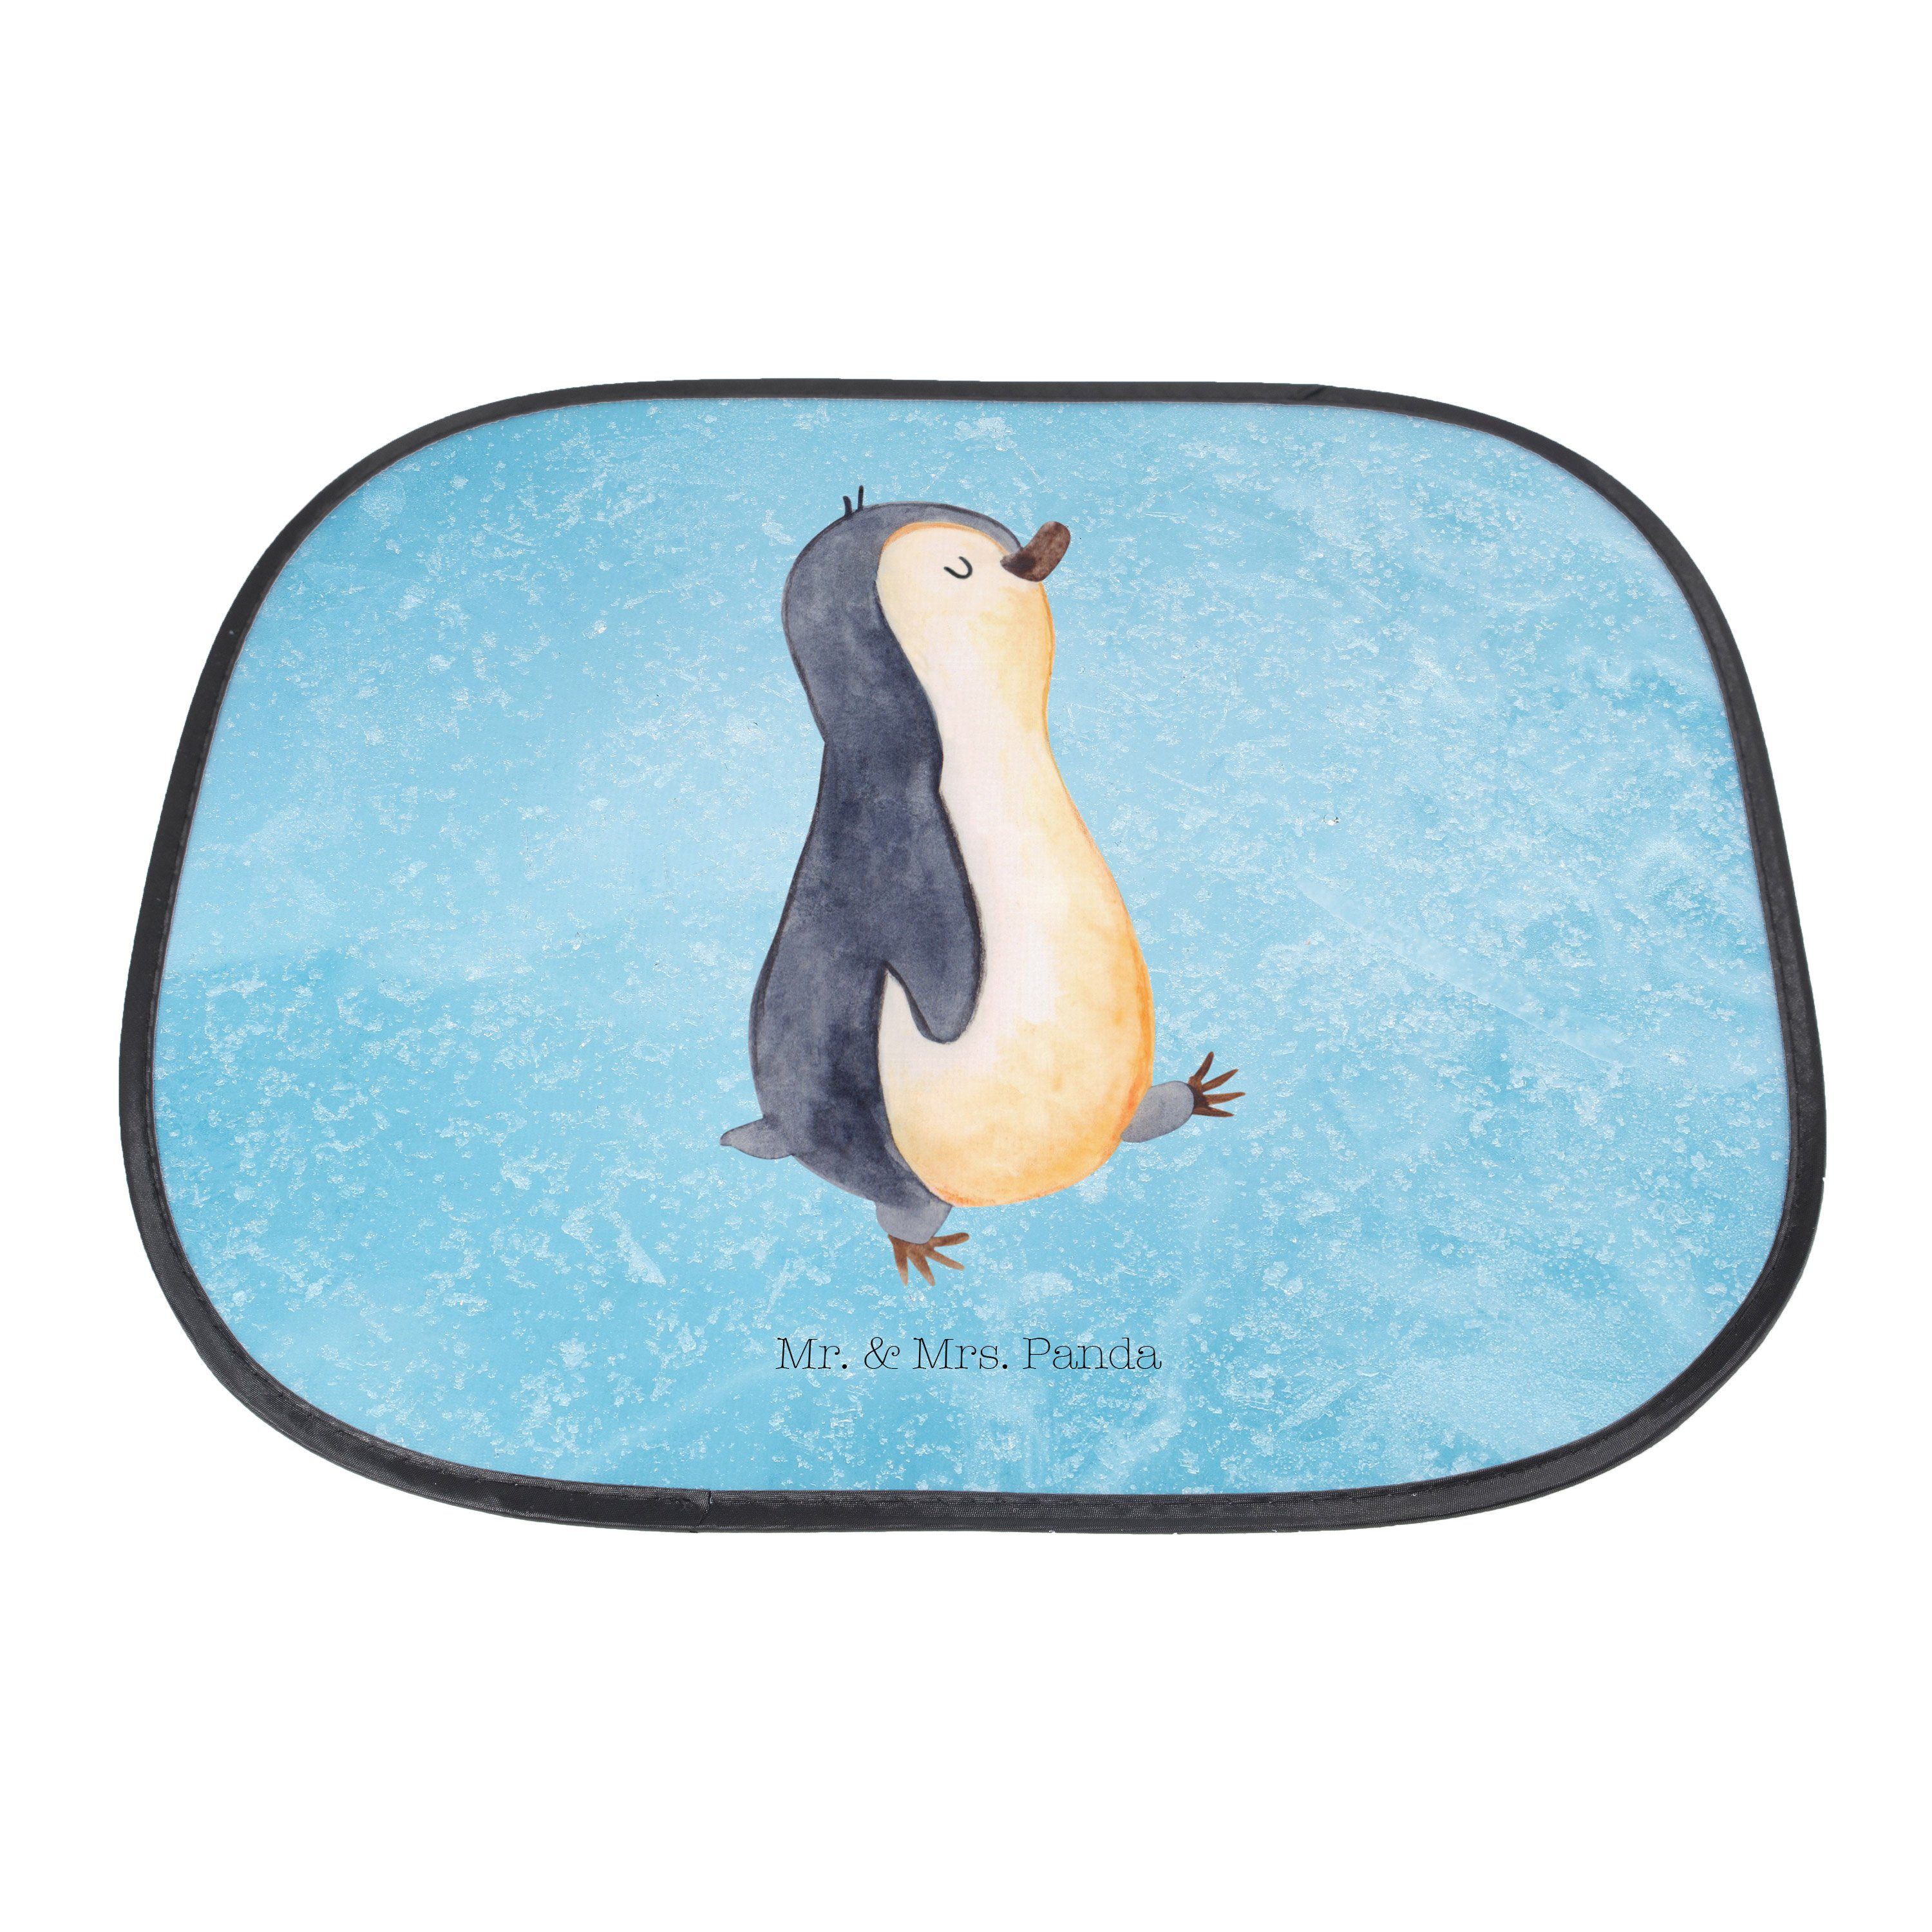 Sonnenschutz Eisblau Sonnenschutz Sonne, Kinder, Seidenmatt Pinguin marschierend - Geschenk, Mr. Mrs. Panda, & -